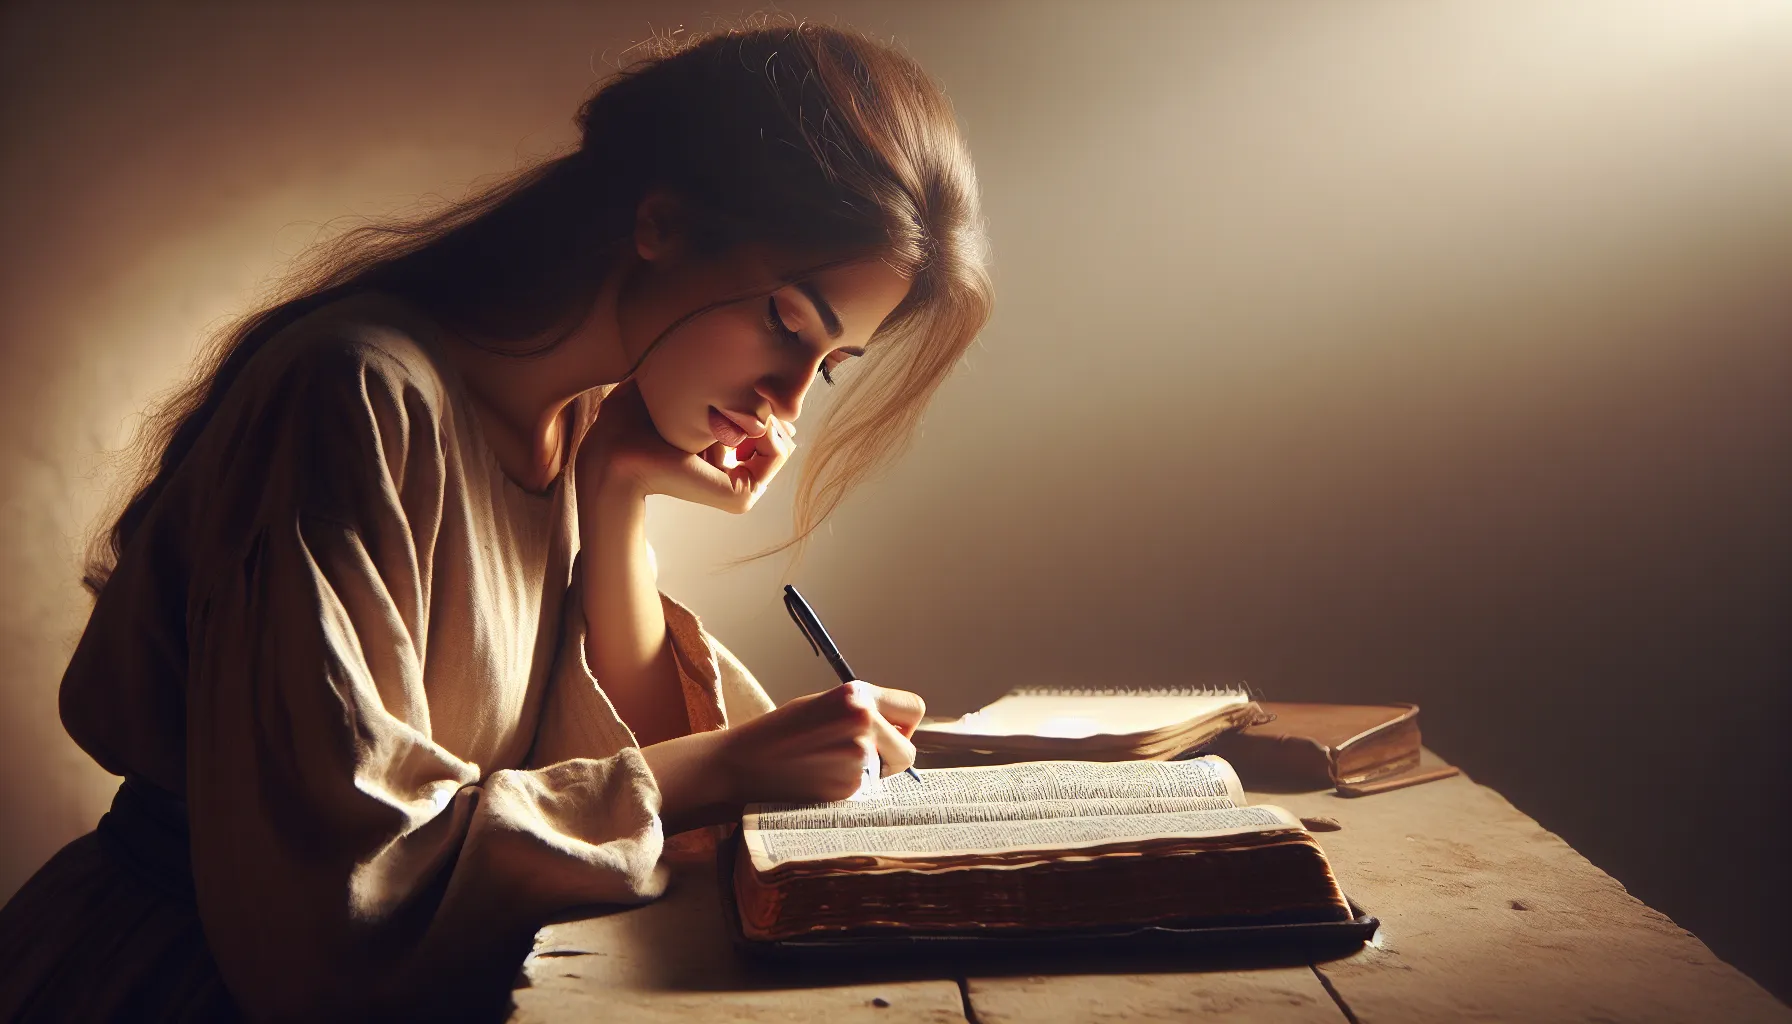 Imagen de una persona leyendo la Biblia y tomando notas para estudiar de forma efectiva.